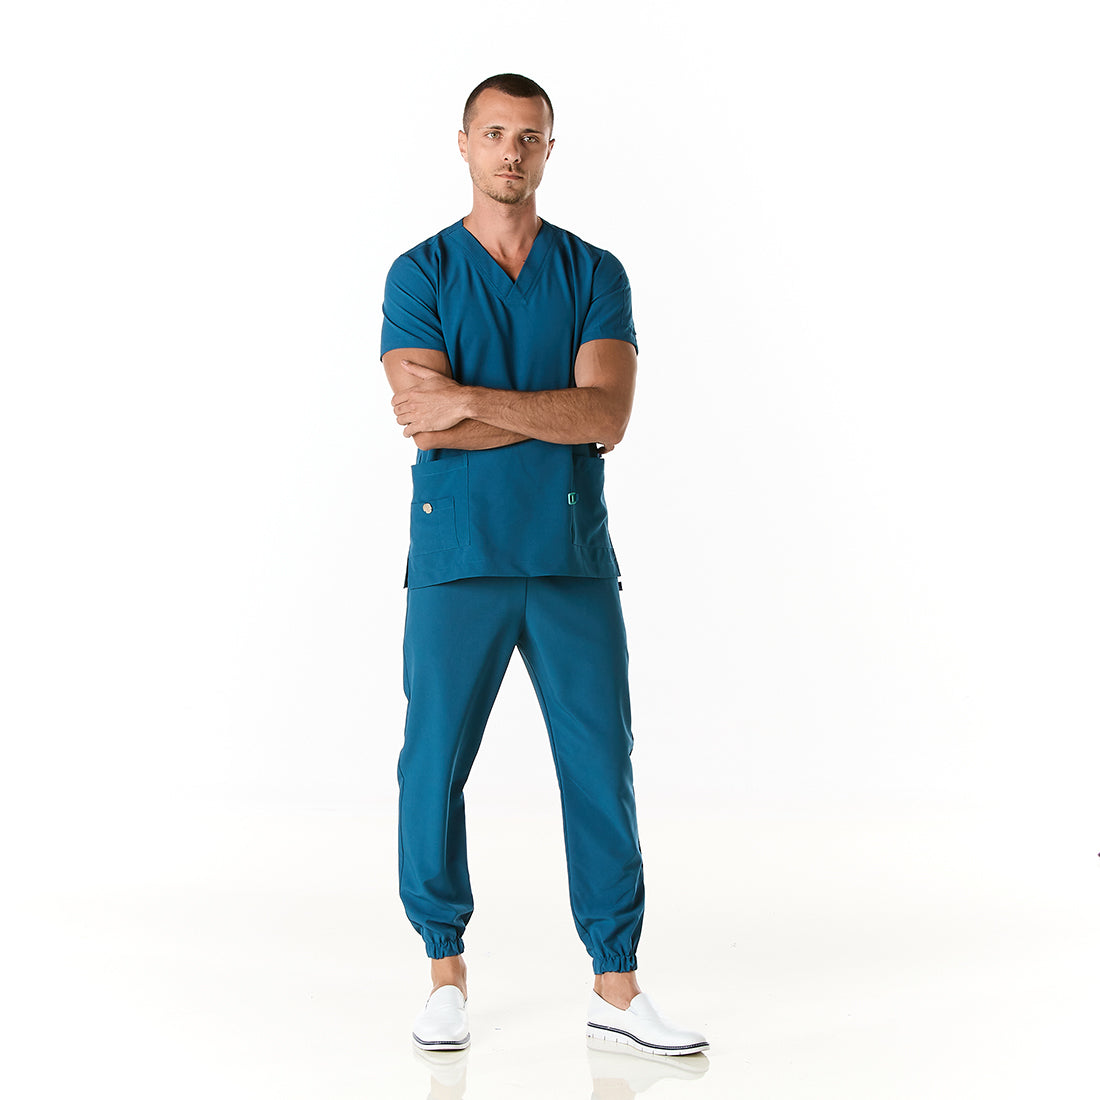 Hombre vistiendo pijama sanitario color azul turquesa con cuello en v y pantalon tipo jogger